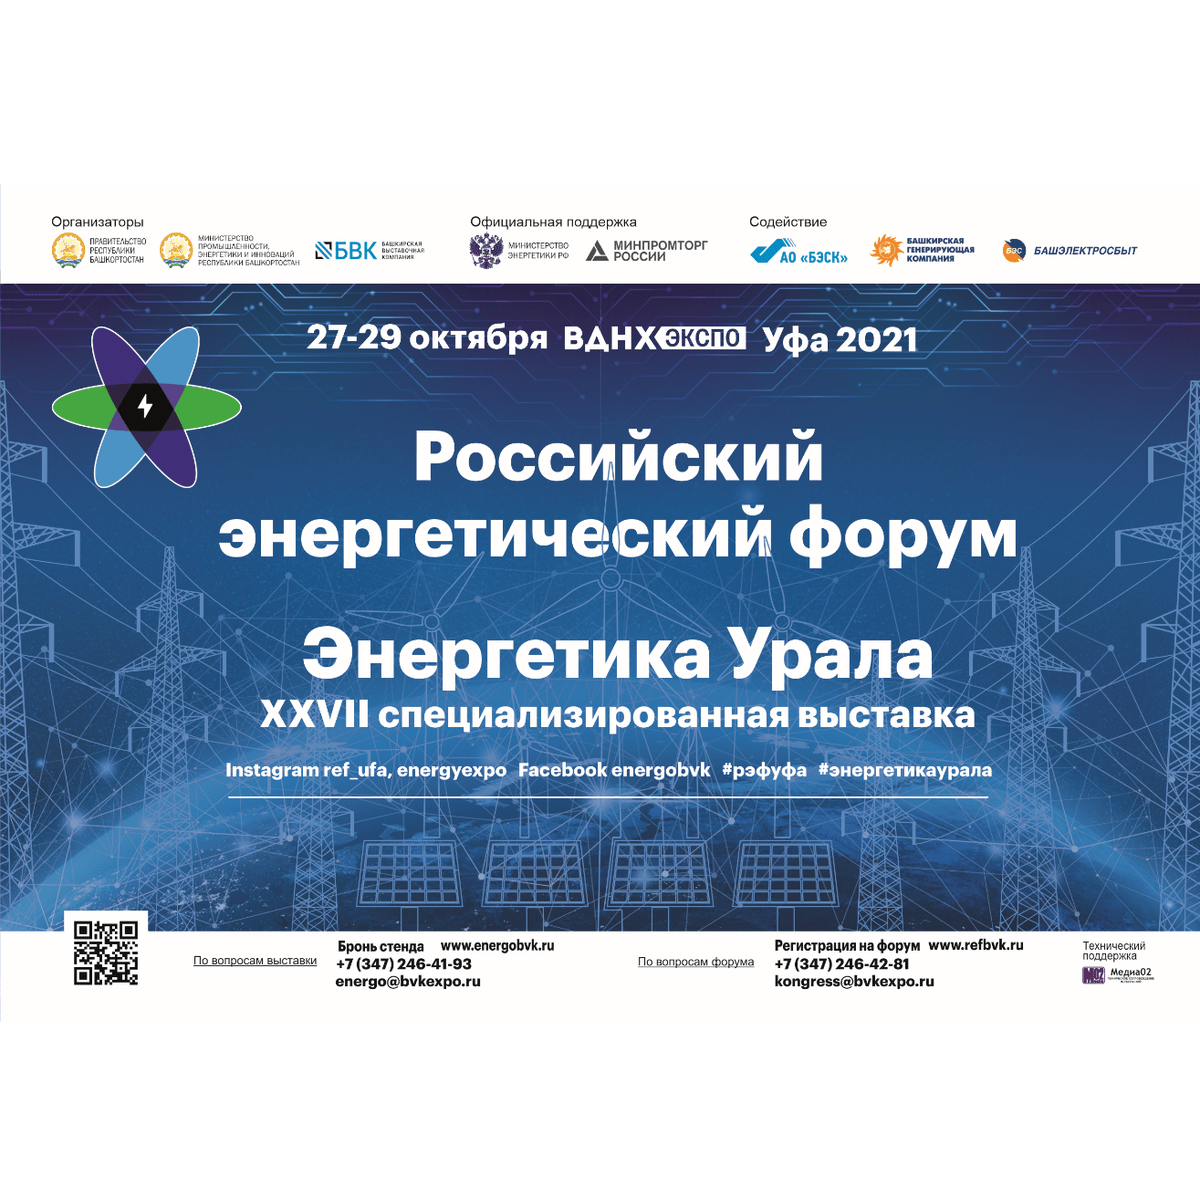 27-29 октября, 2021 г. Российский энергетический форум и специализированная выставка «Энергетика Урала»